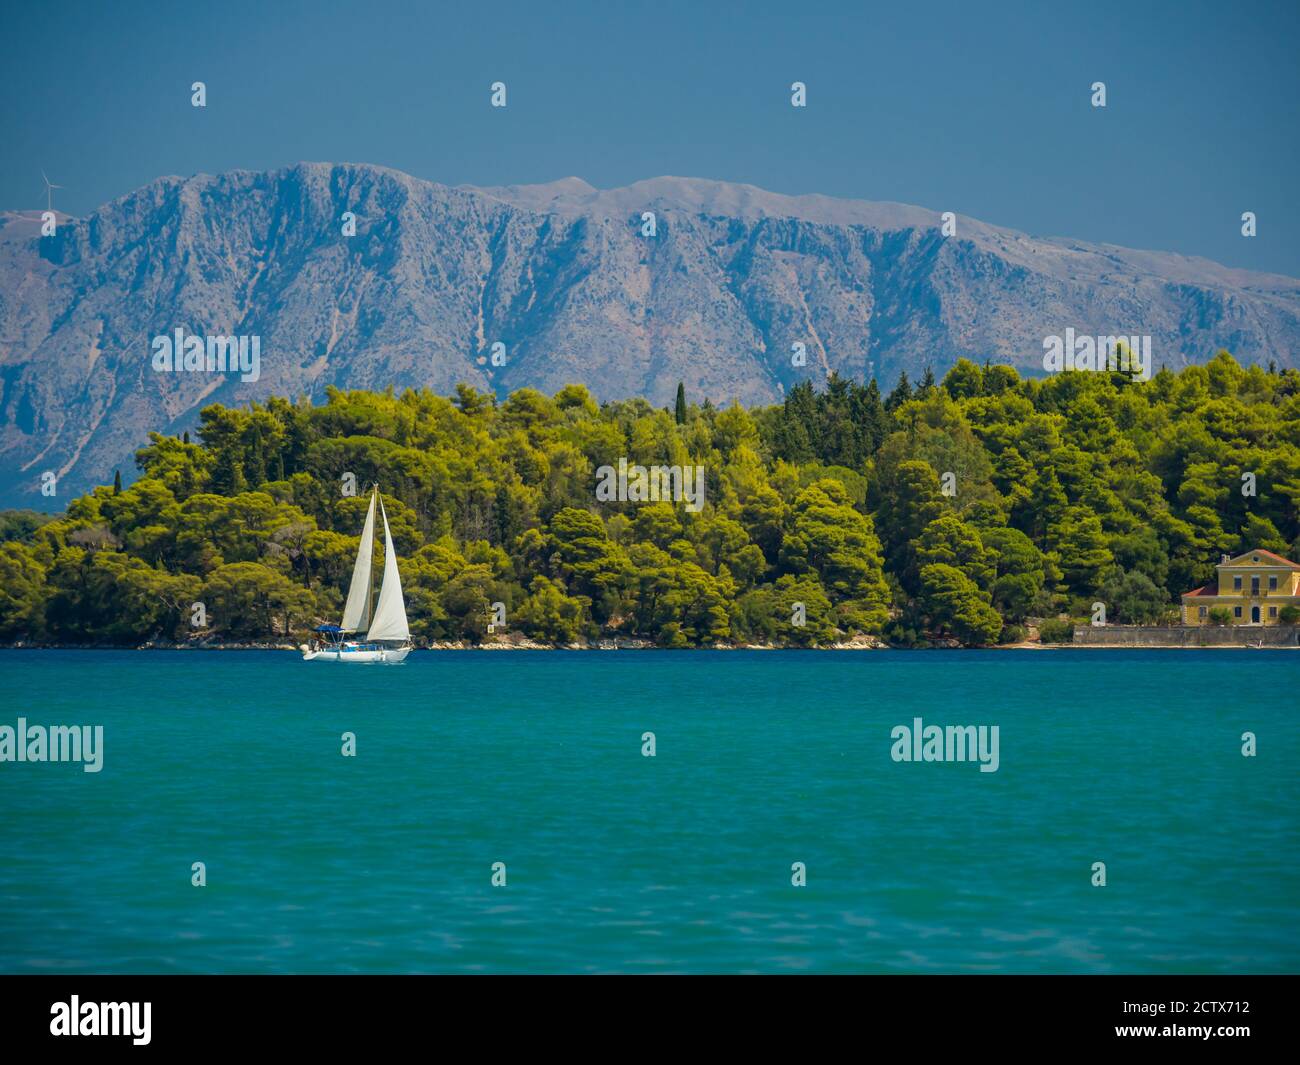 Saiing ship in the bay of Nidri in Greece Stock Photo